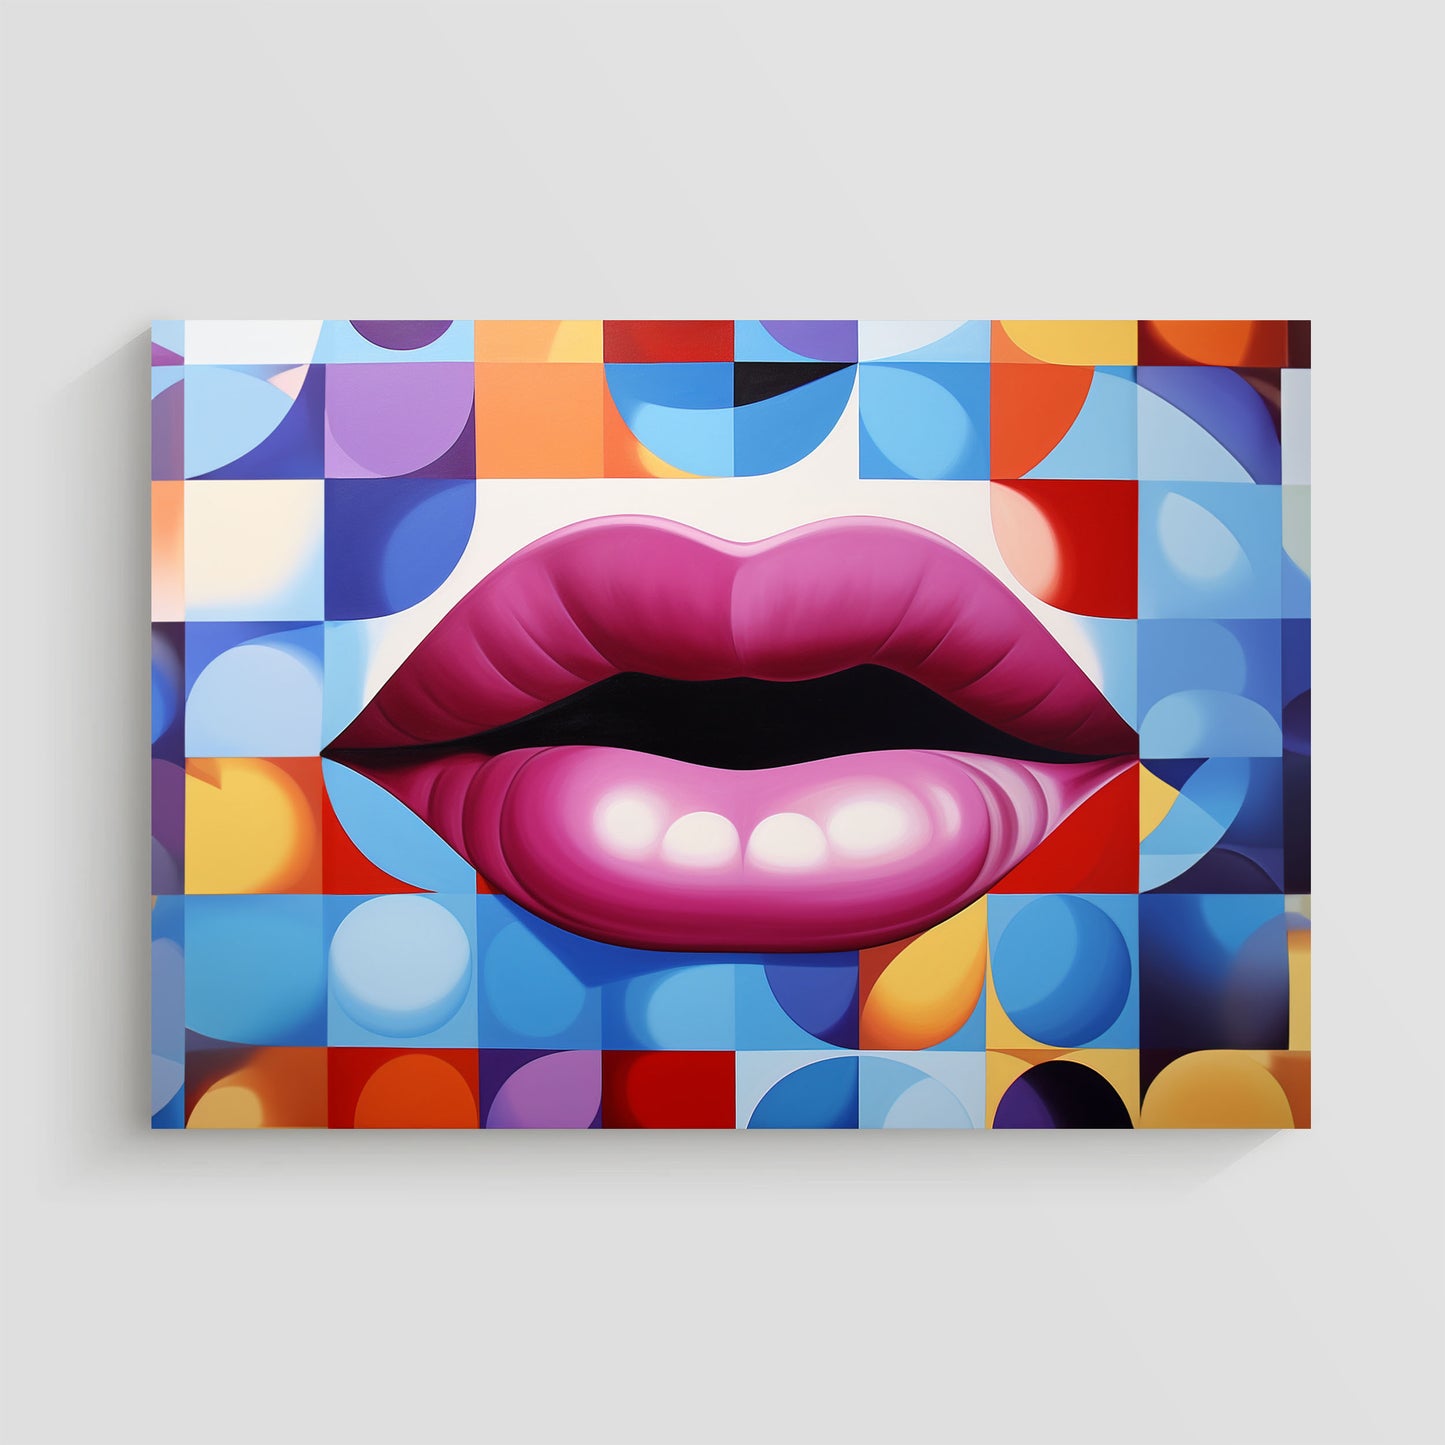 magen de arte pop que muestra unos labios rojos prominentes sobre un fondo geométrico colorido, con formas y patrones vibrantes en tonos variados.